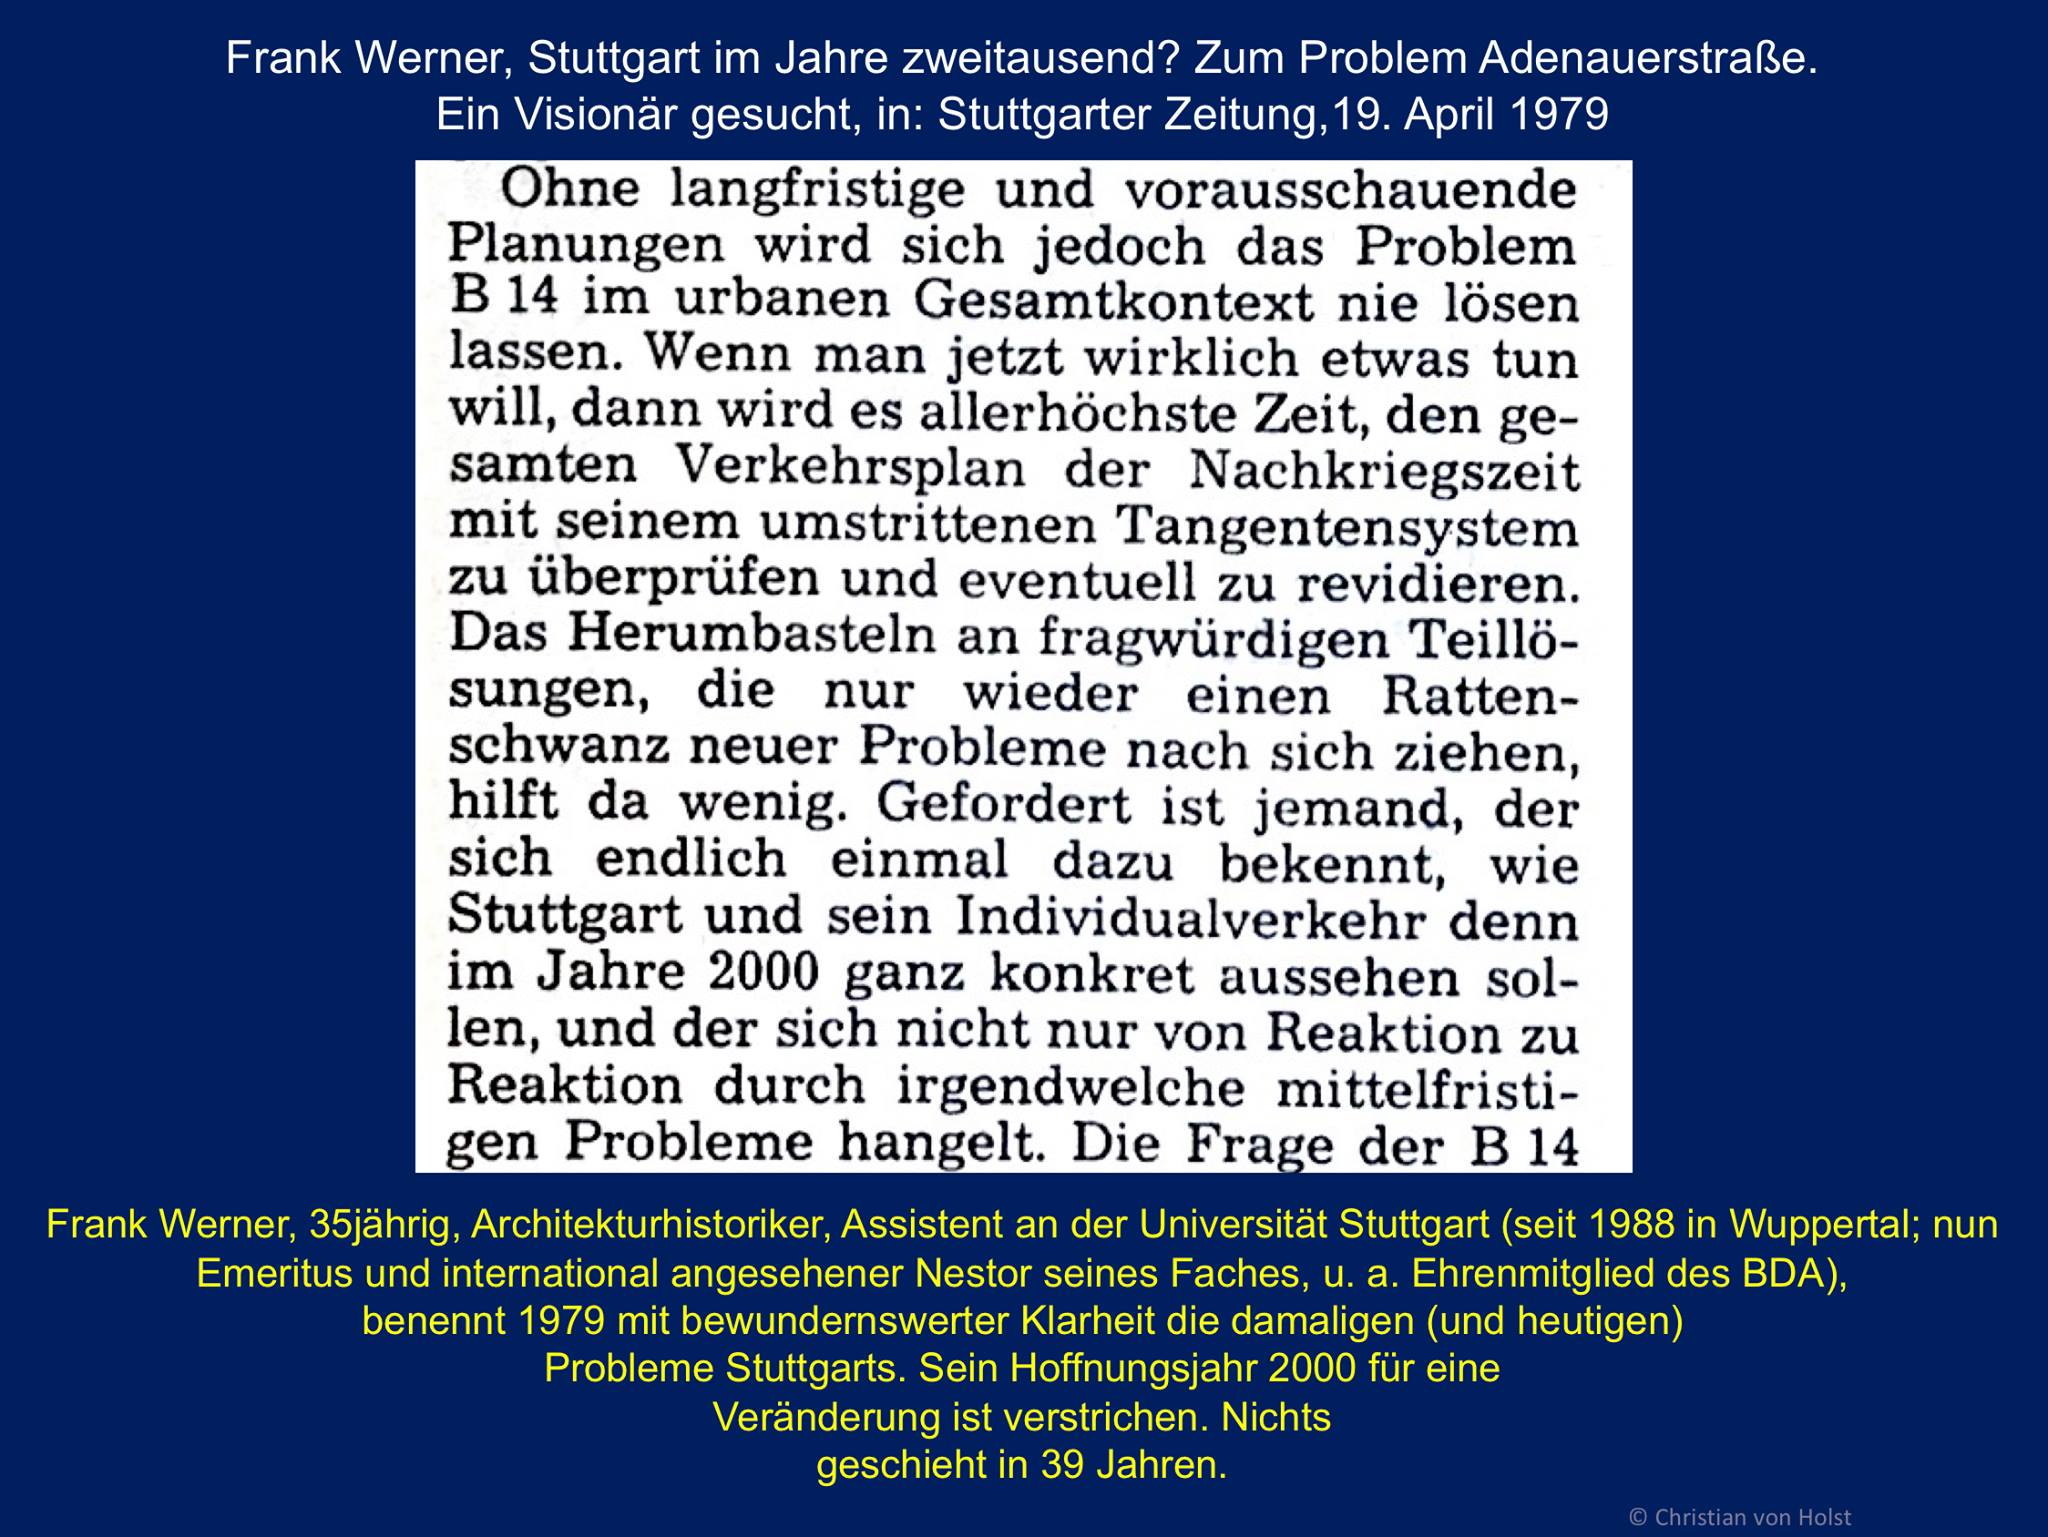 Stuttgarts B14 und Frank Werner: besser und knapper wurde dieses Stuttgartproblem nicht formuliert